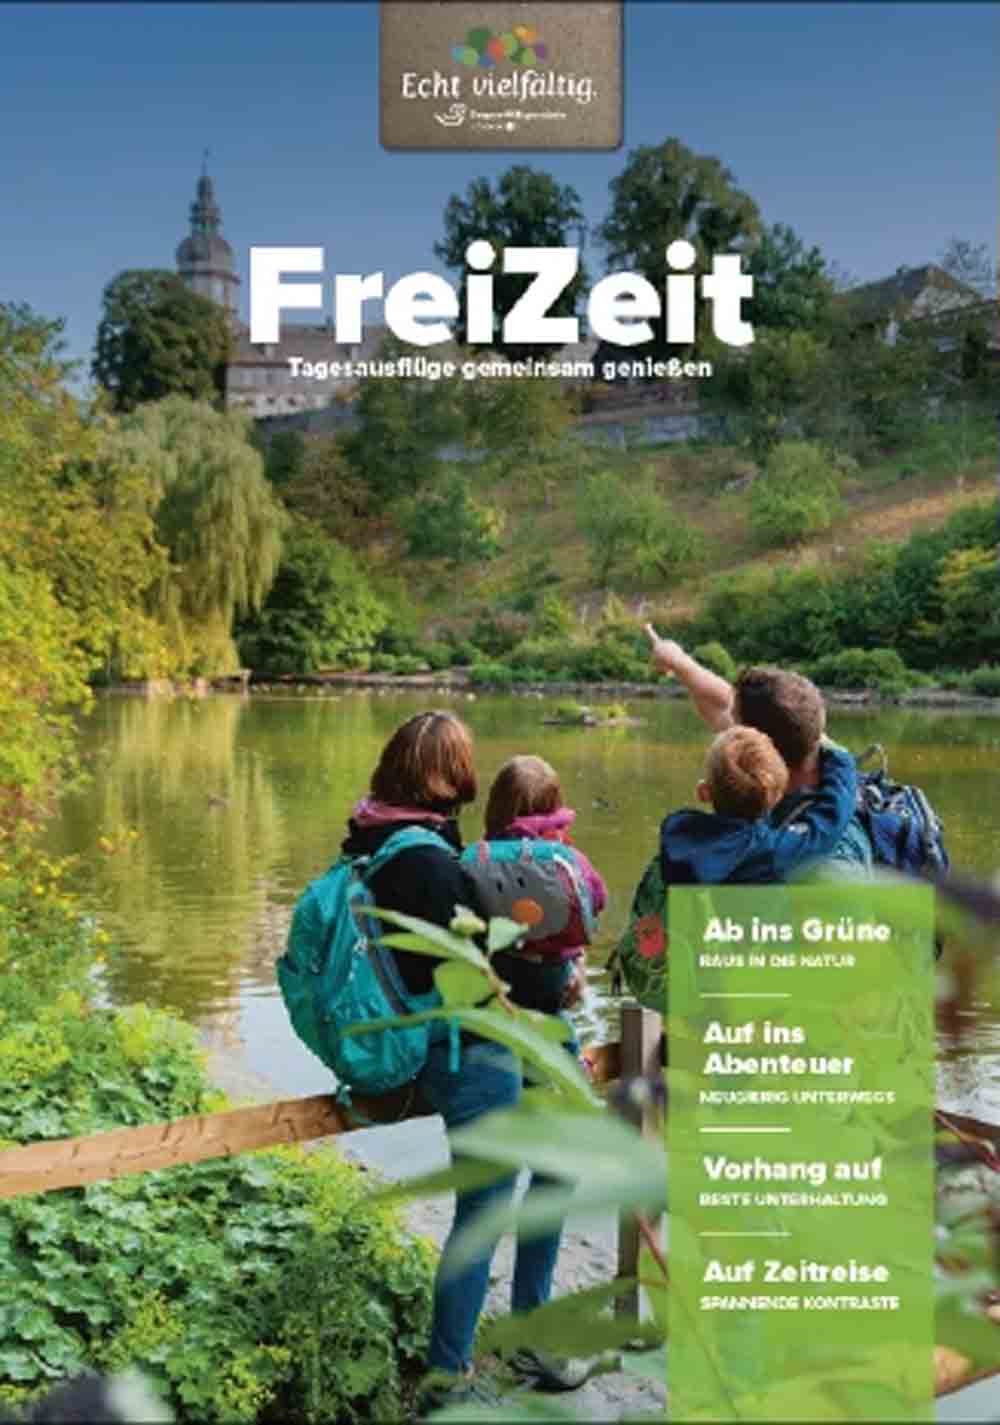 Touristikverband Siegerland Wittgenstein, »Ab nach draußen!« TVSW hat Broschüre »FreiZeit« für Tagesausflüge neu aufgelegt